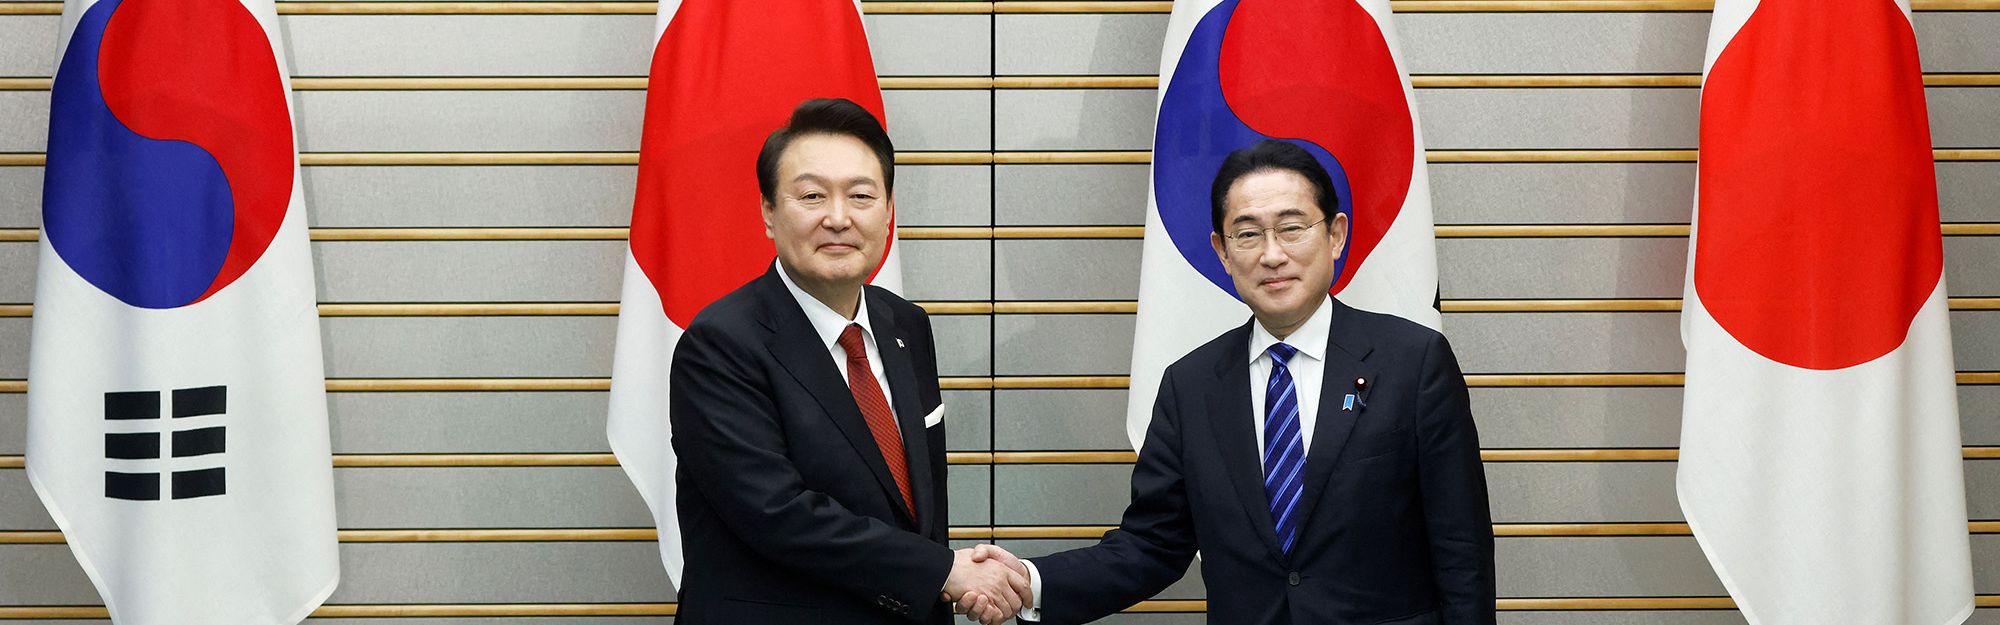 Japan and South Korea agree to mend ties as leaders meet following years of  dispute | CNN